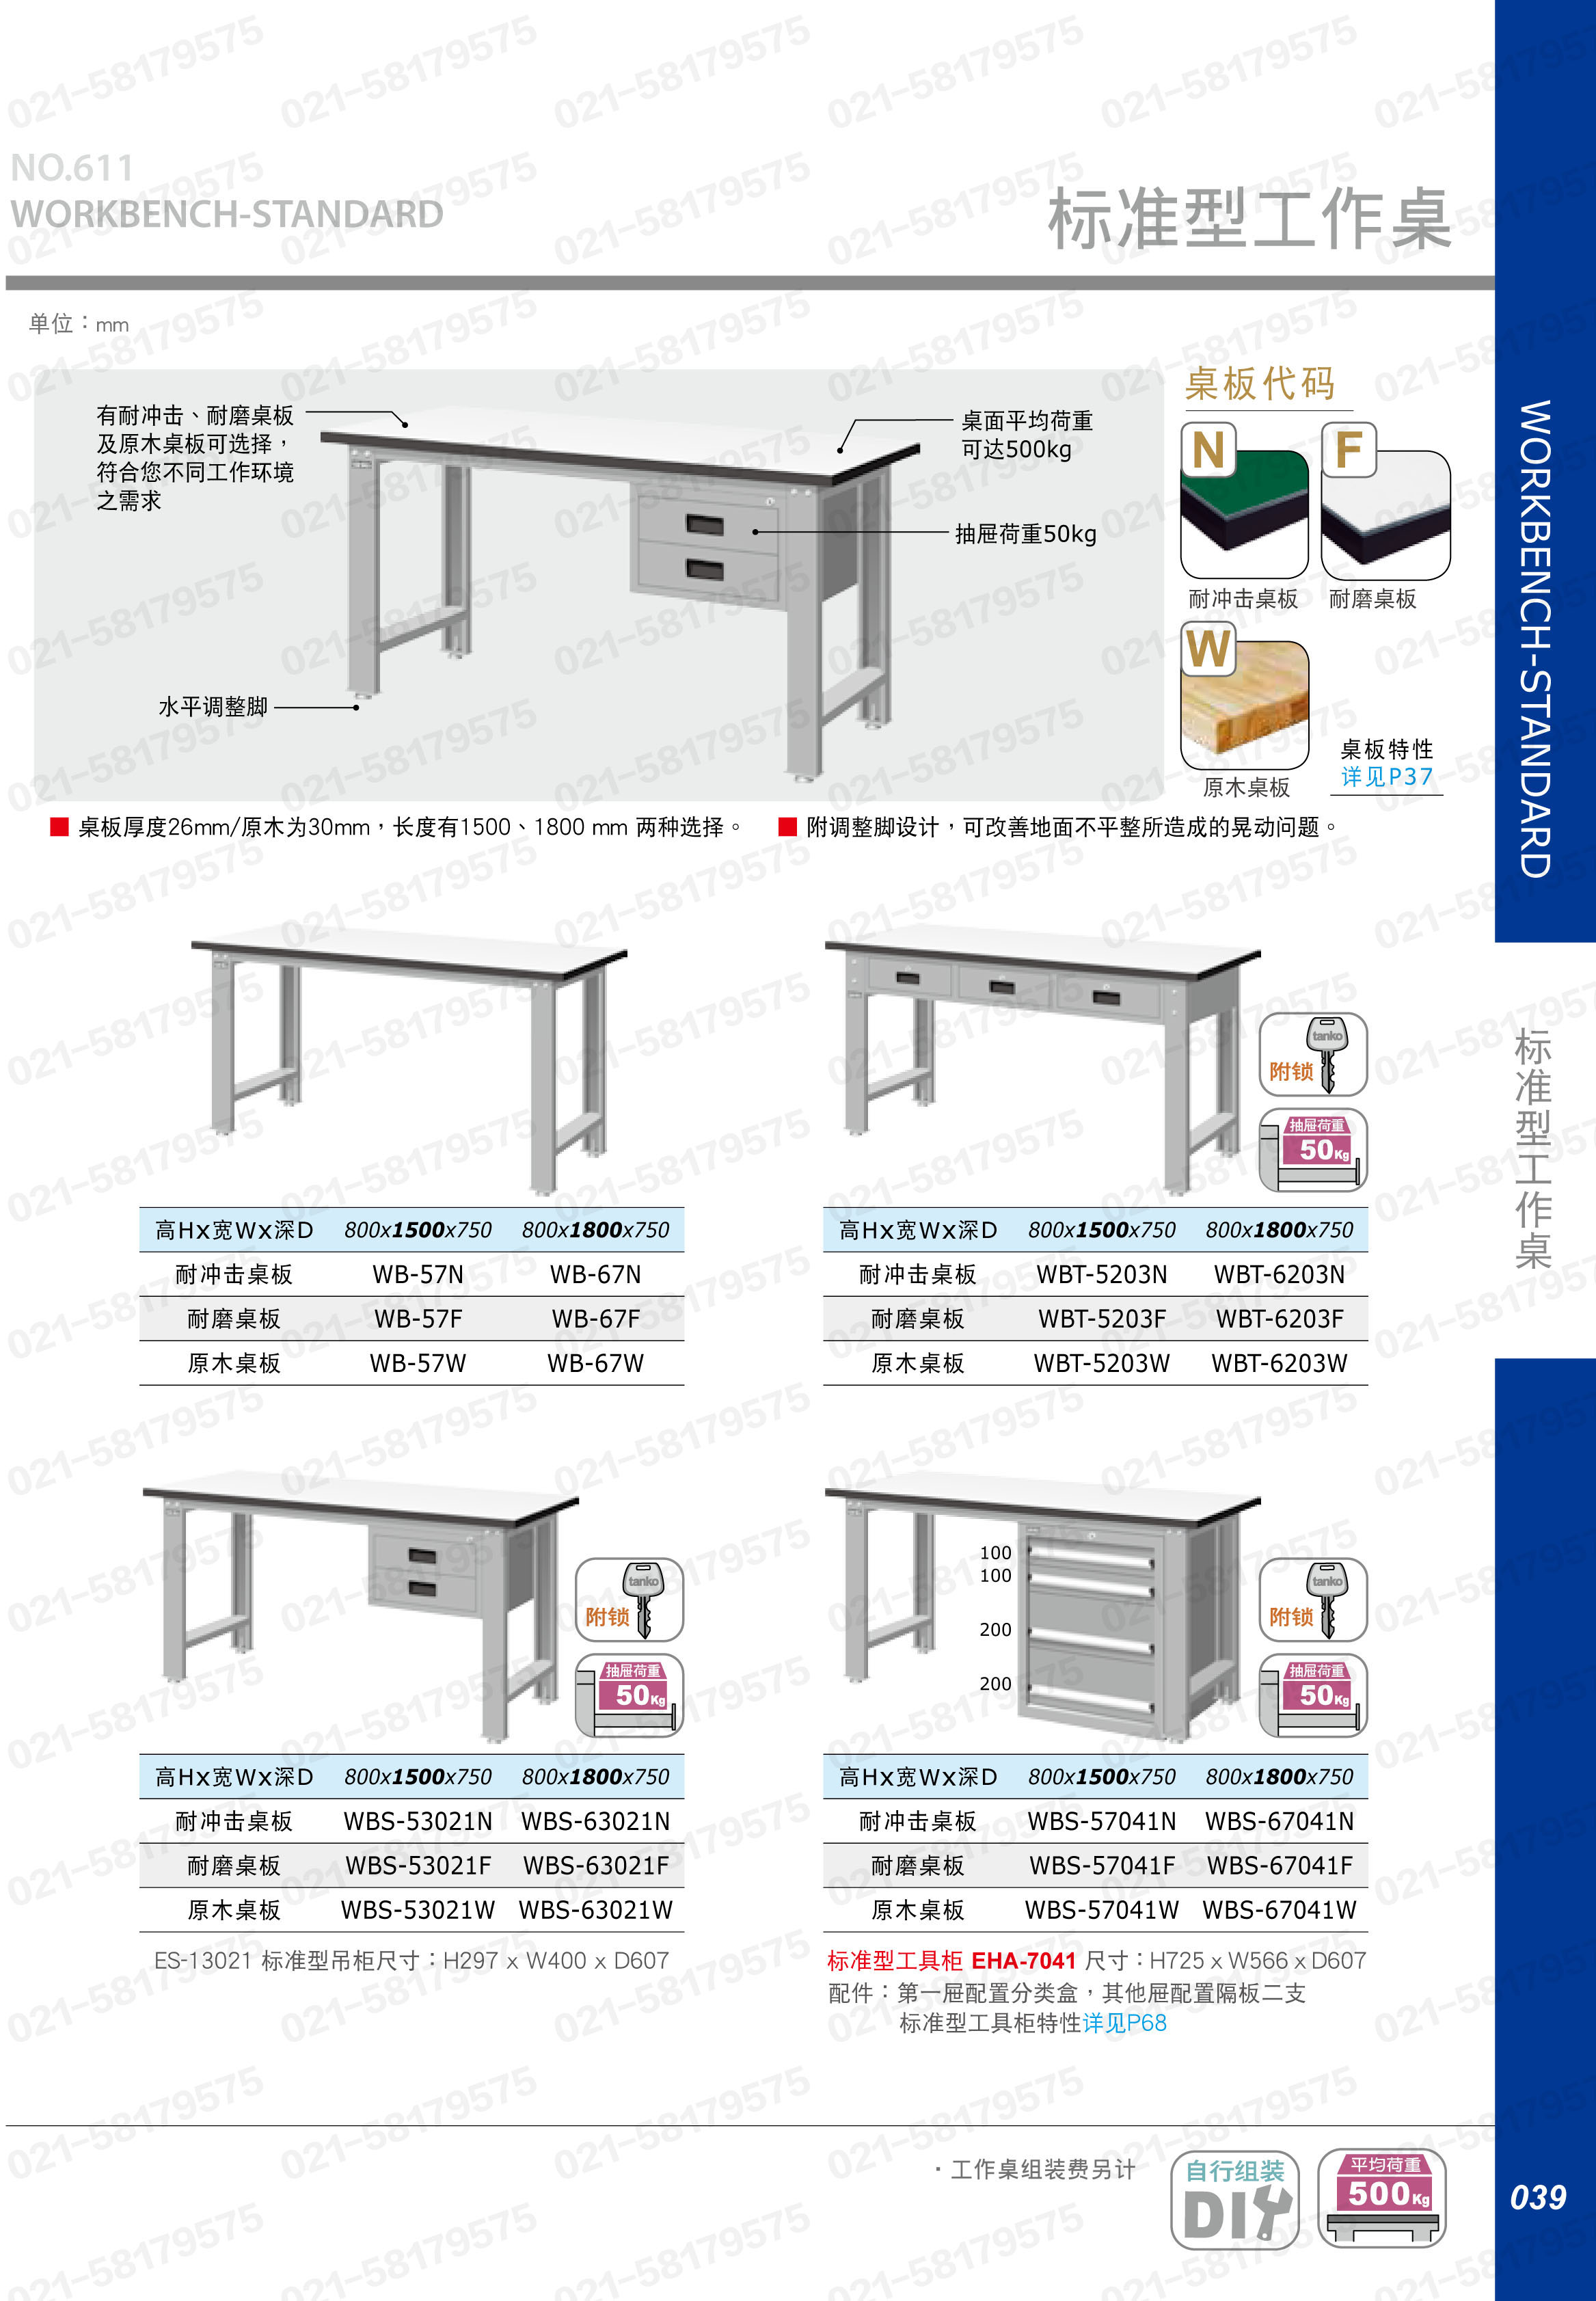 轻型工作桌1500×750×800mm 耐冲击桌板 带双吊抽，WBS-53021N，5D2934